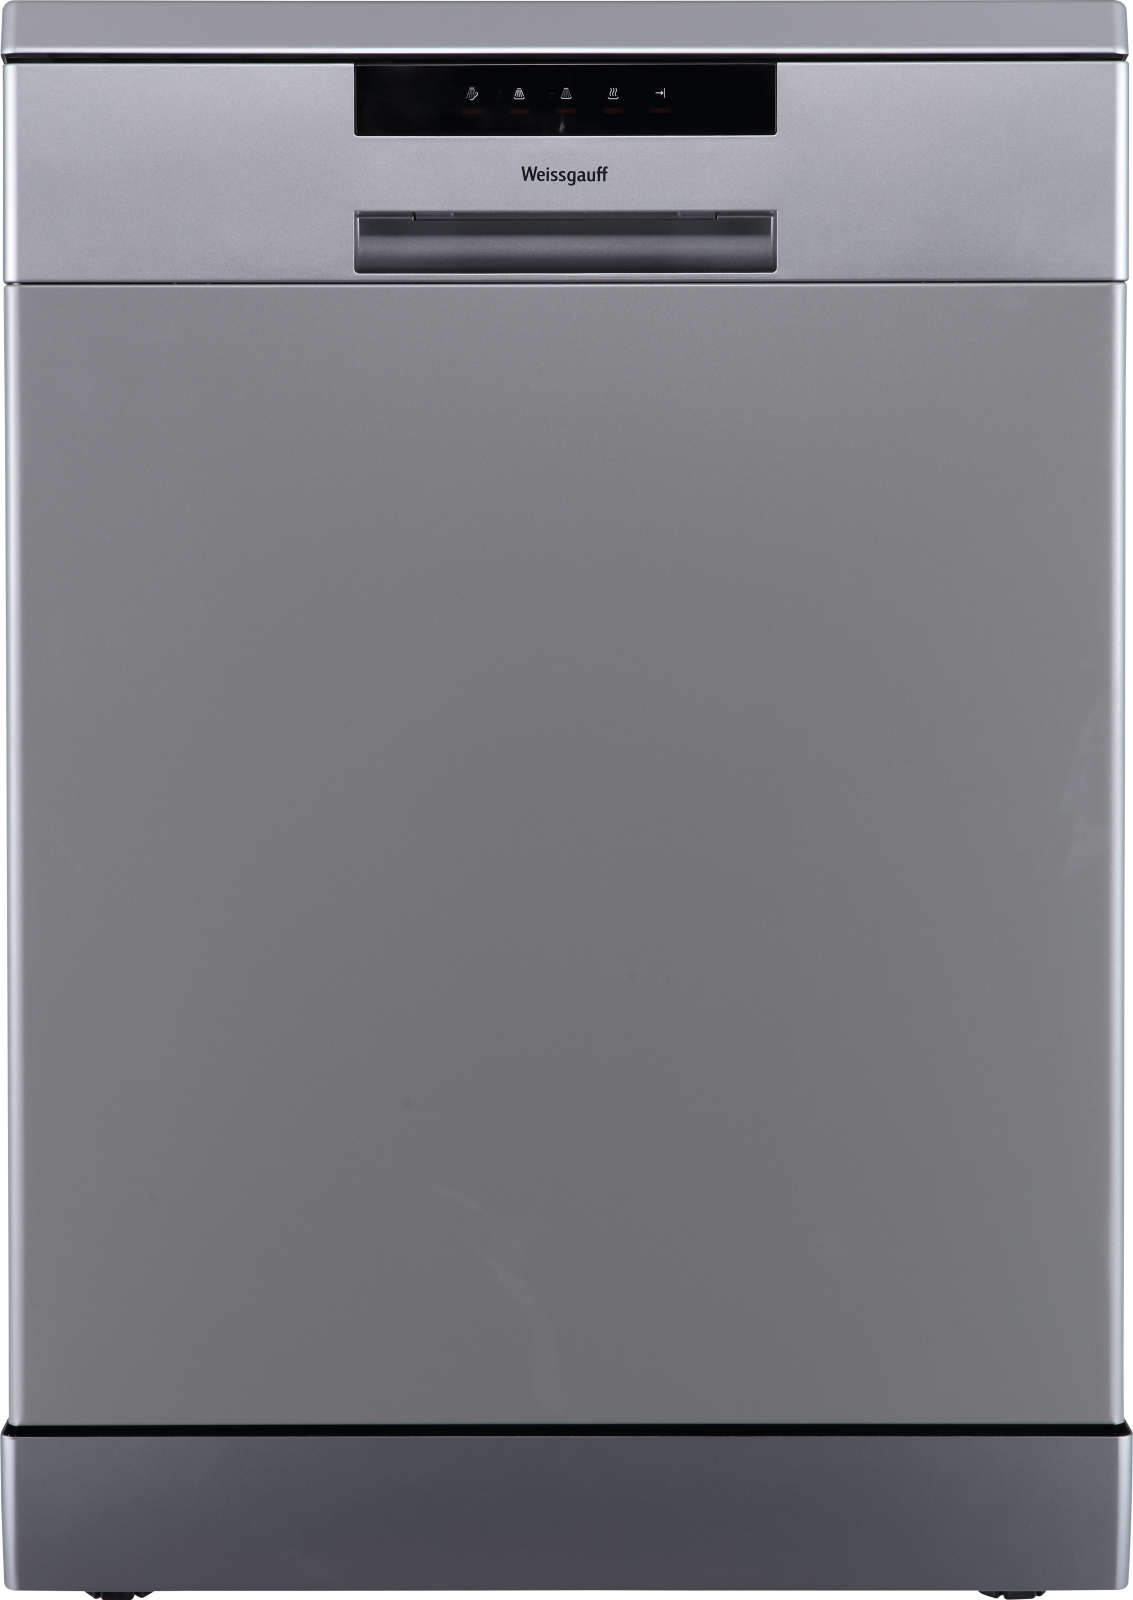 Посудомоечная машина Weissgauff DW 6013 Inox серебристый посудомоечная машина weissgauff tdw 4006 s серебристый